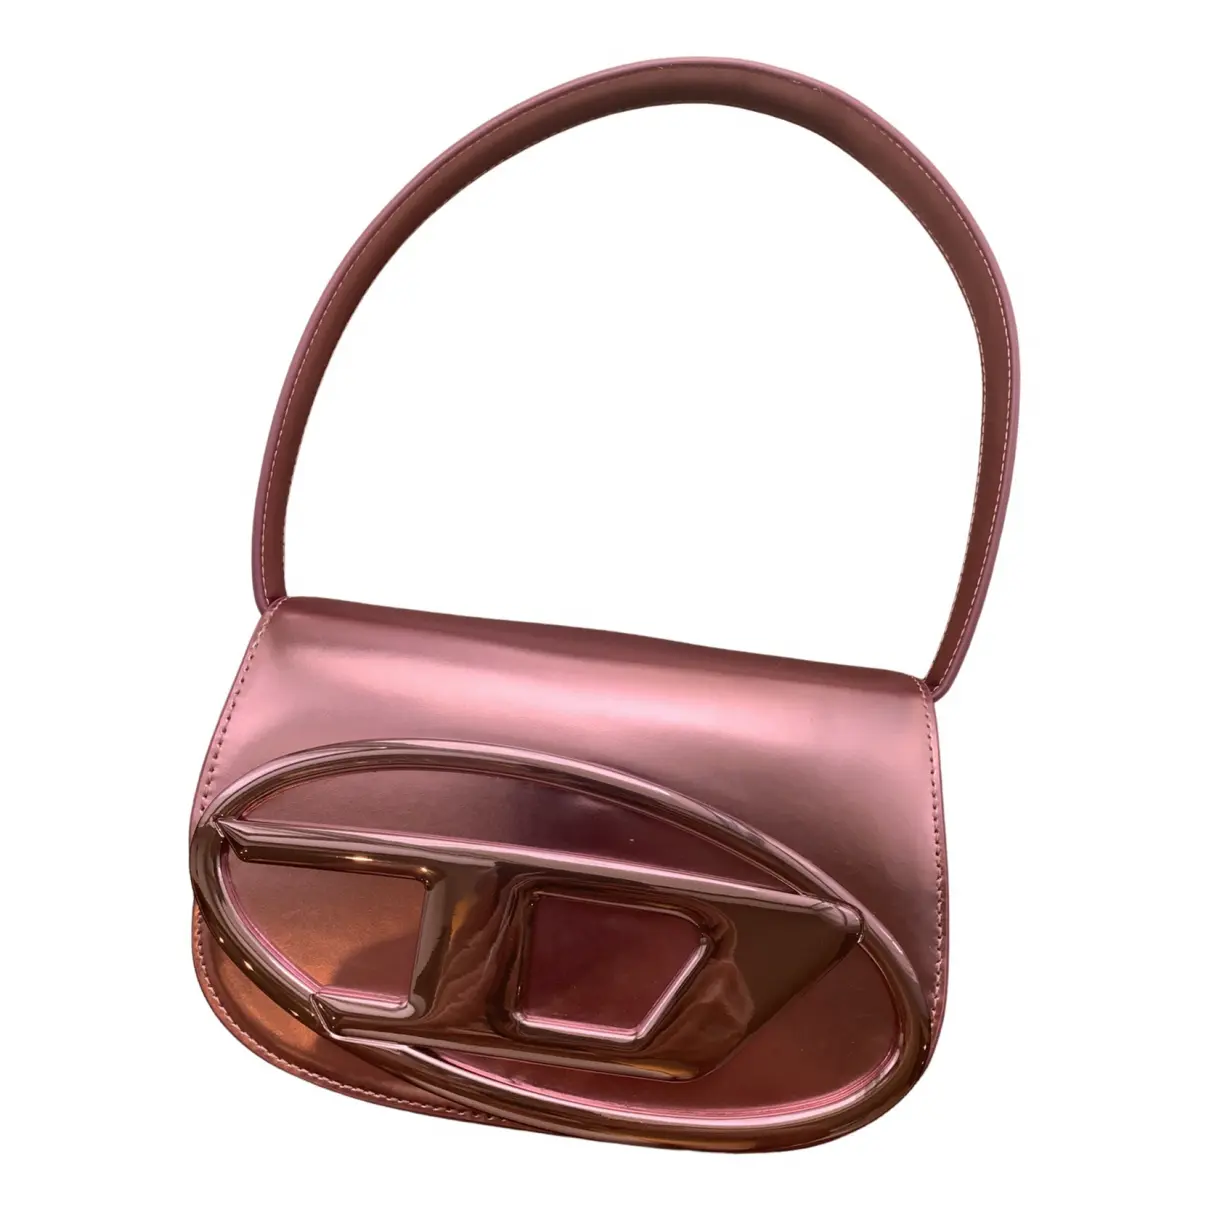 Leather handbag Diesel